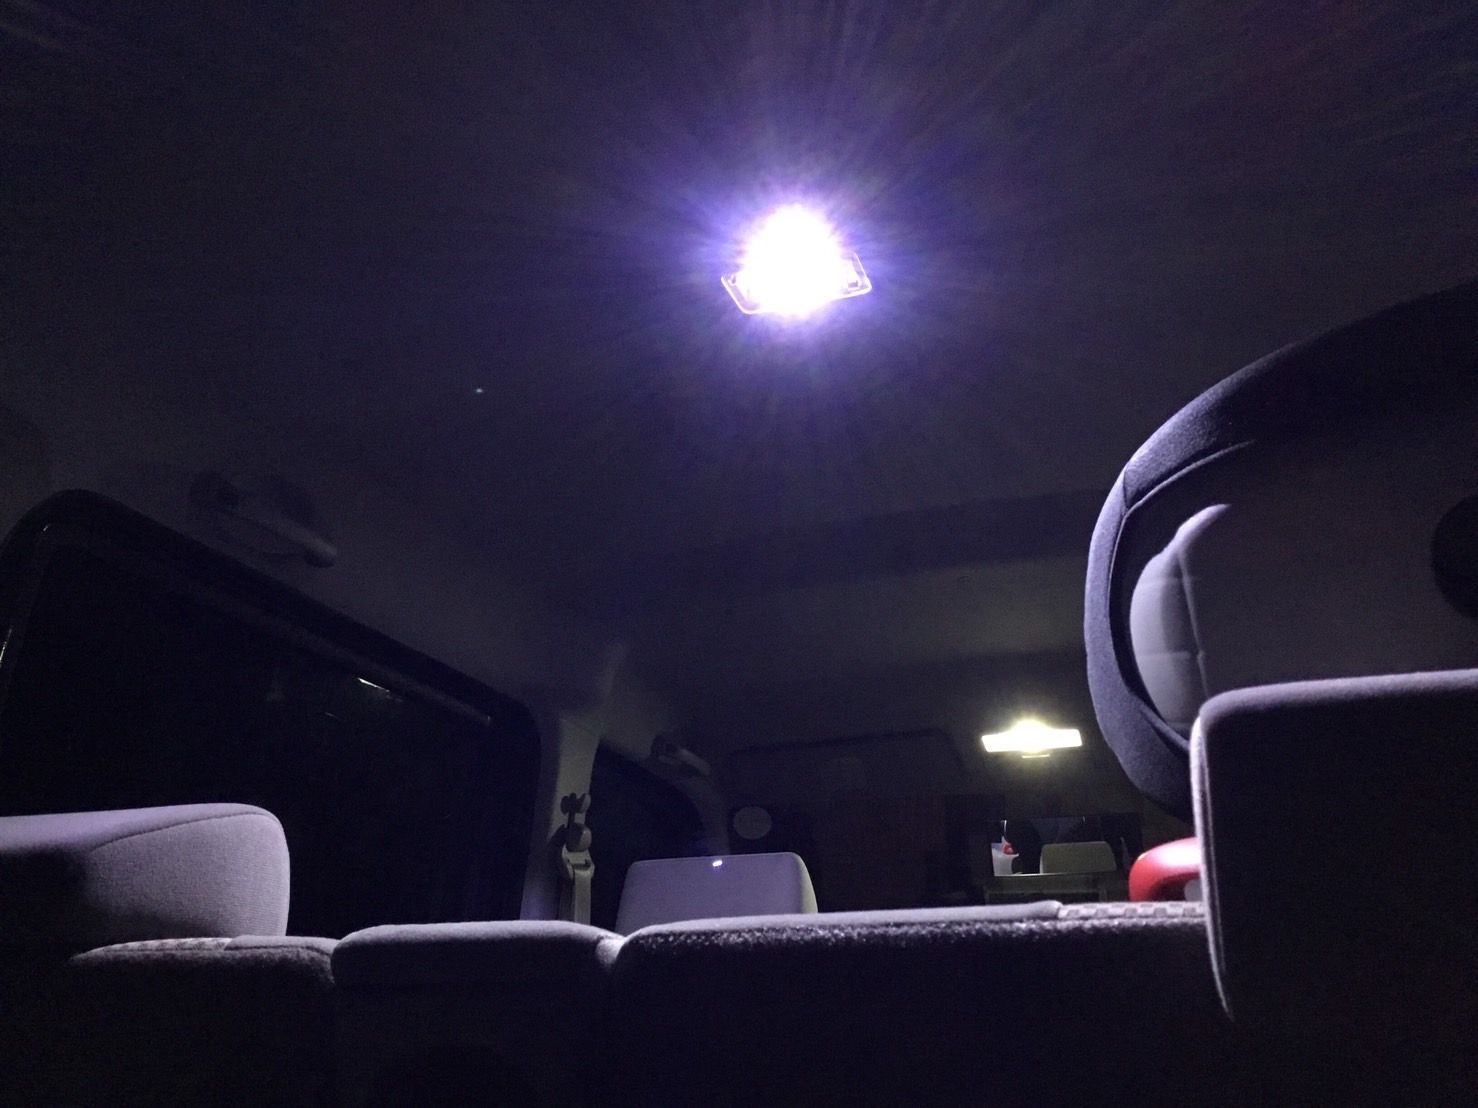 MF21S MRワゴンスポーツ LED ルームランプ ウェッジ球セット T10 COB 全面発光 バックランプ 車内灯 リバースランプ パーツ -  メルカリ